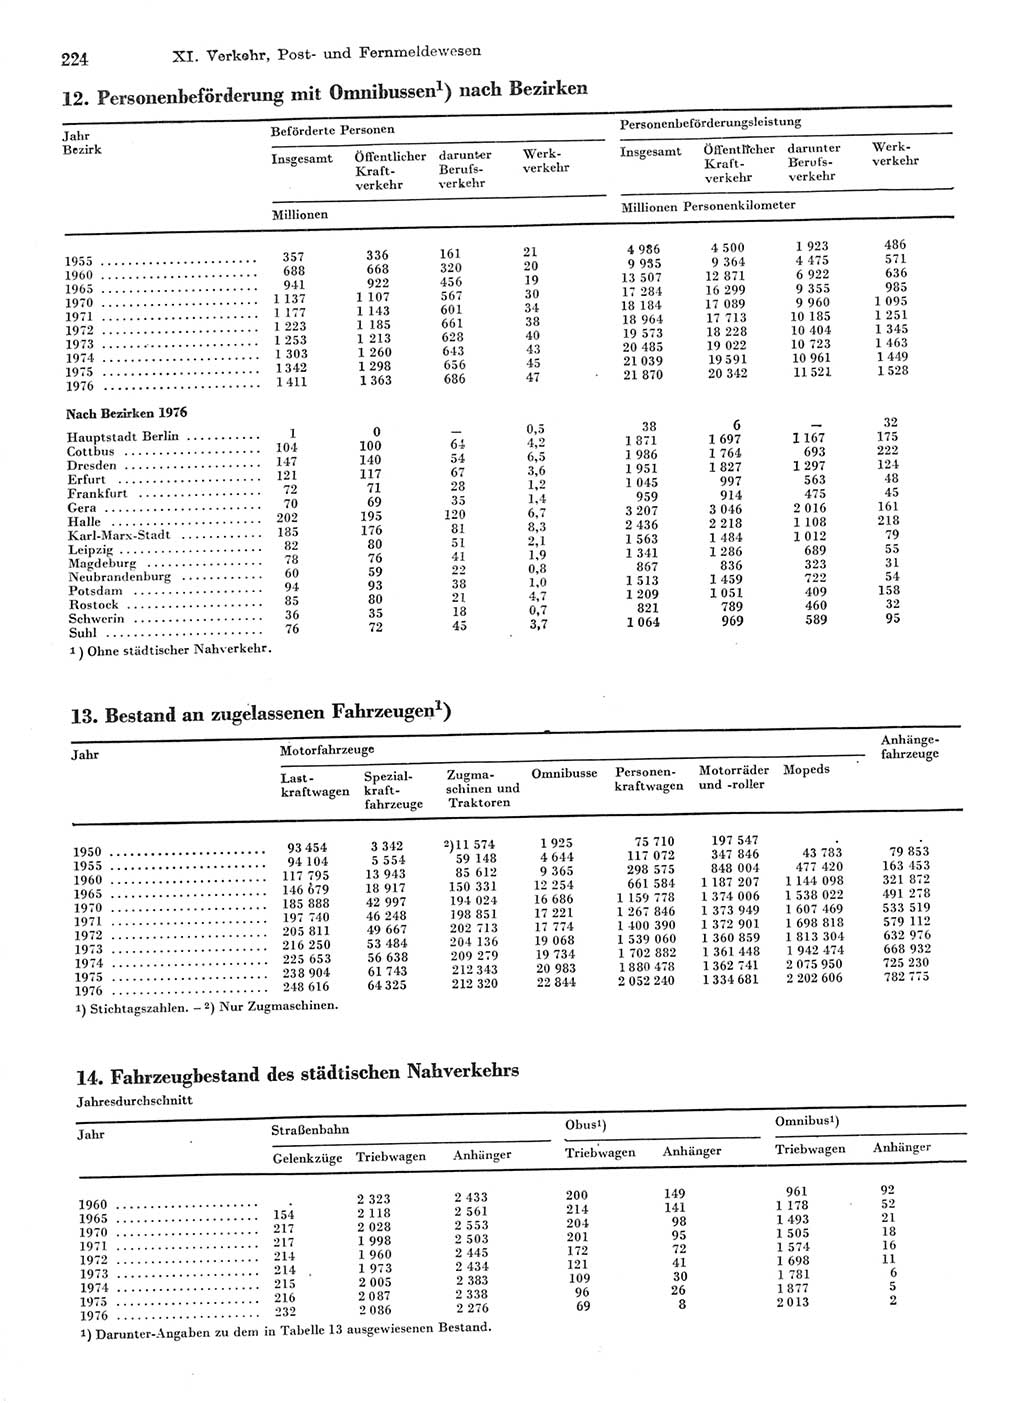 Statistisches Jahrbuch der Deutschen Demokratischen Republik (DDR) 1977, Seite 224 (Stat. Jb. DDR 1977, S. 224)